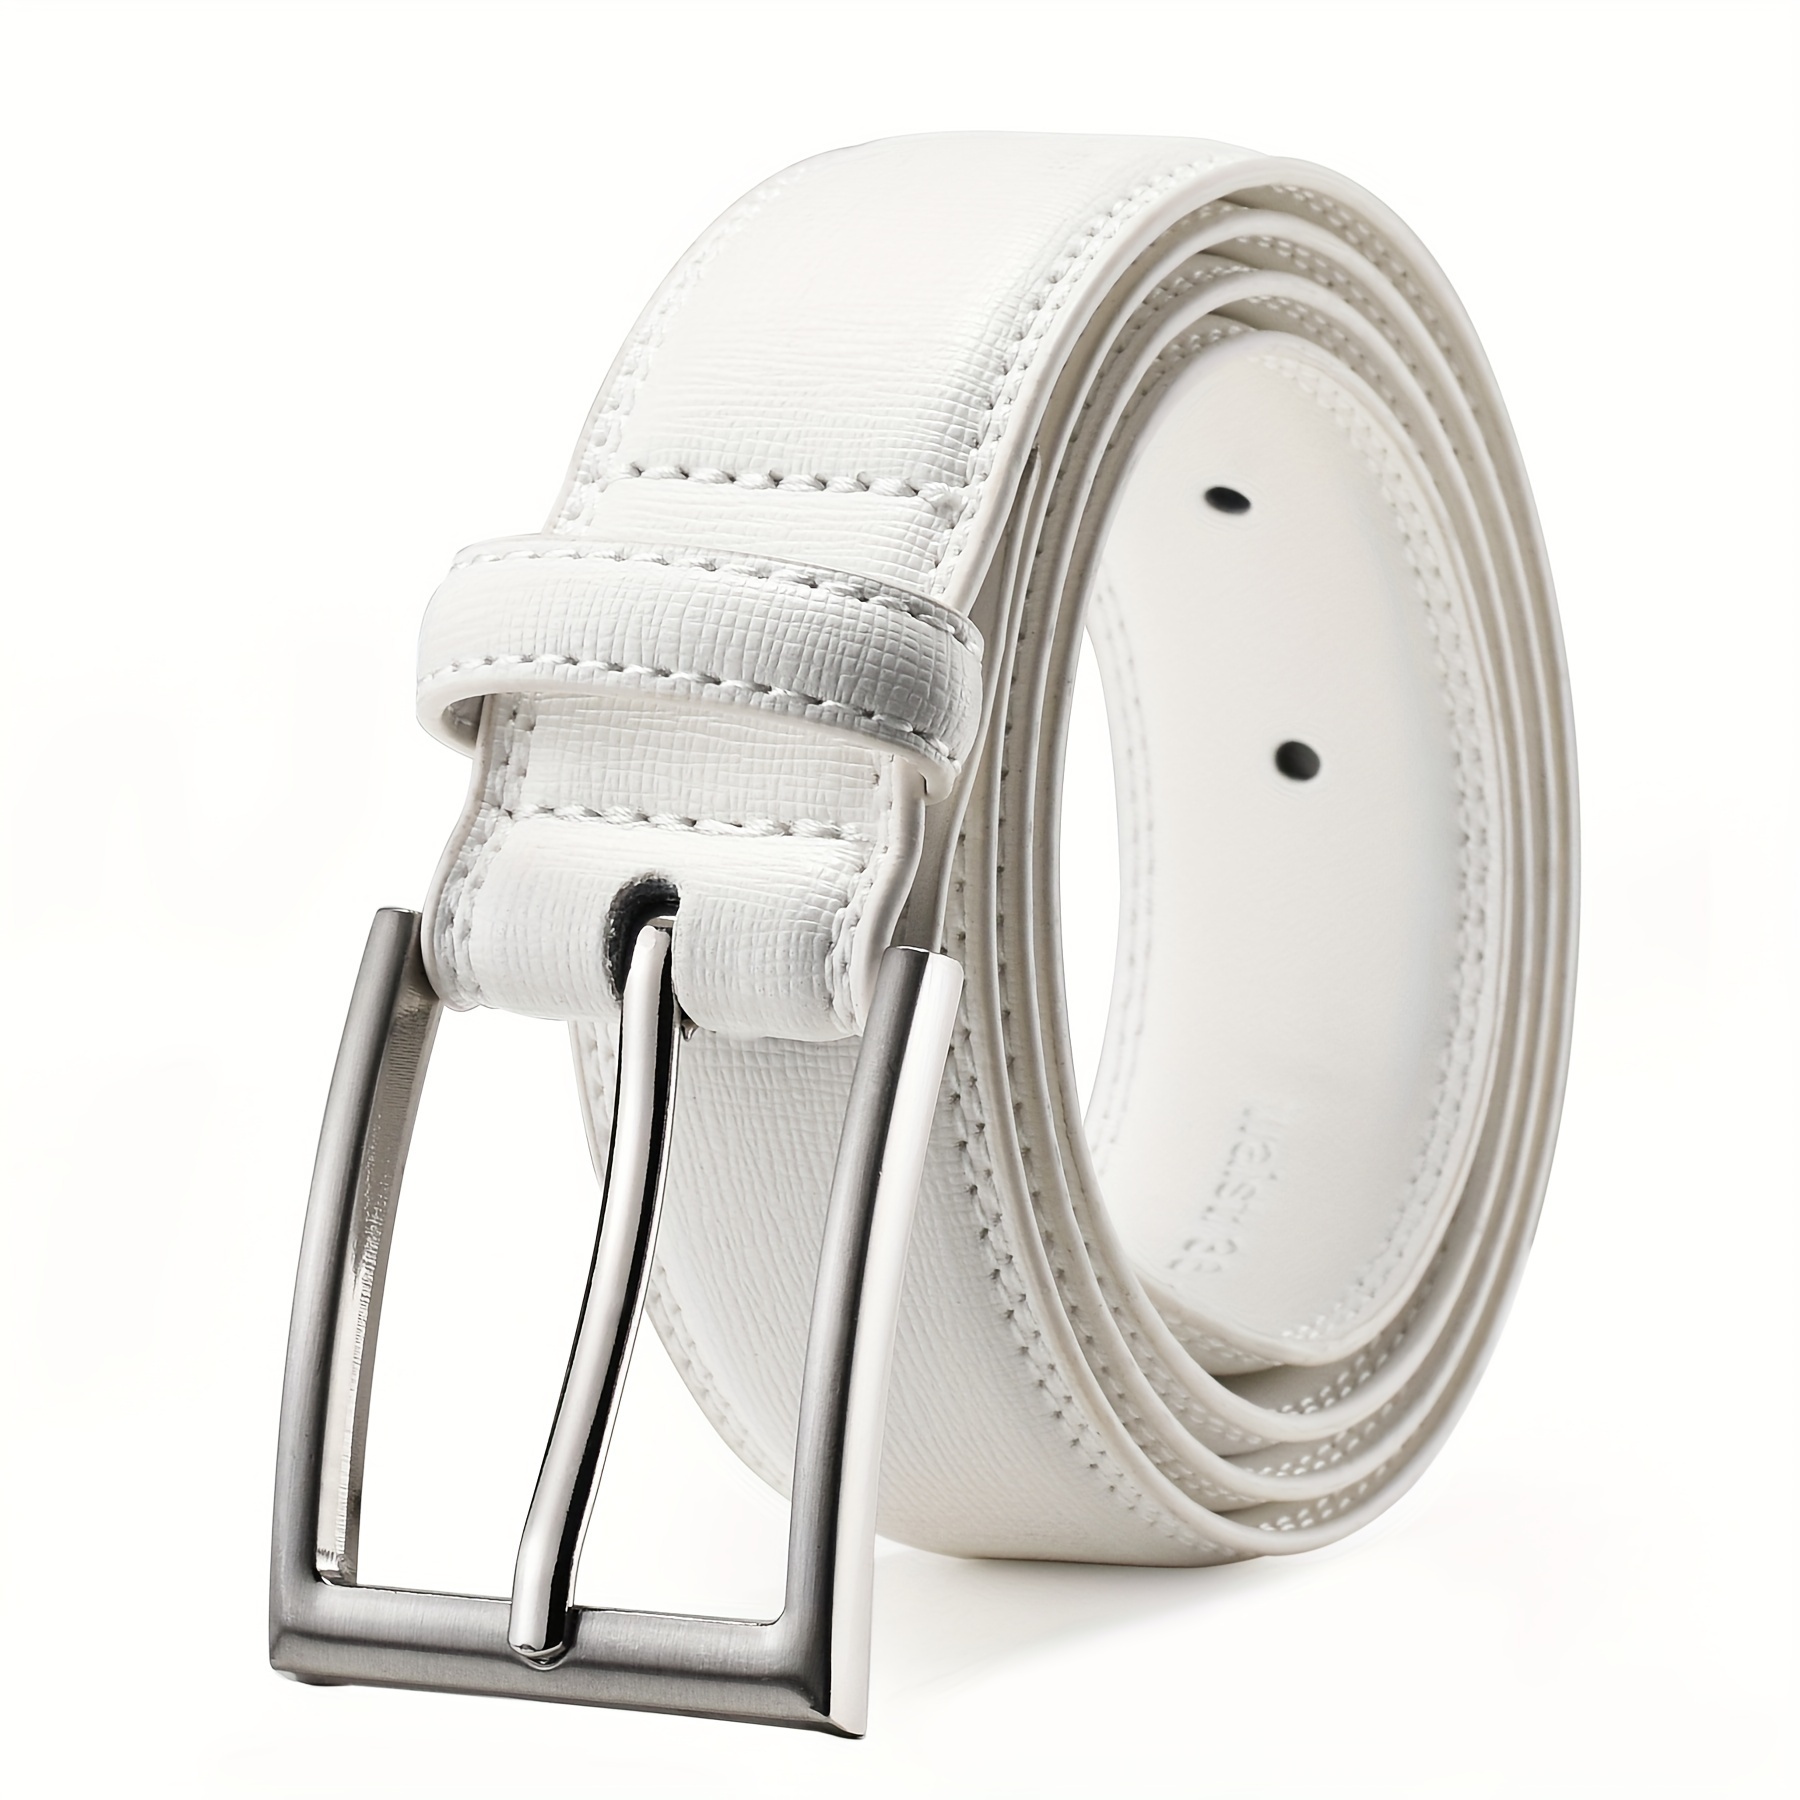 Cinturones de vestir de cuero genuino para hombres – Cinturón para hombre  para trajes, jeans, uniforme con hebilla de un solo diente – diseñado en